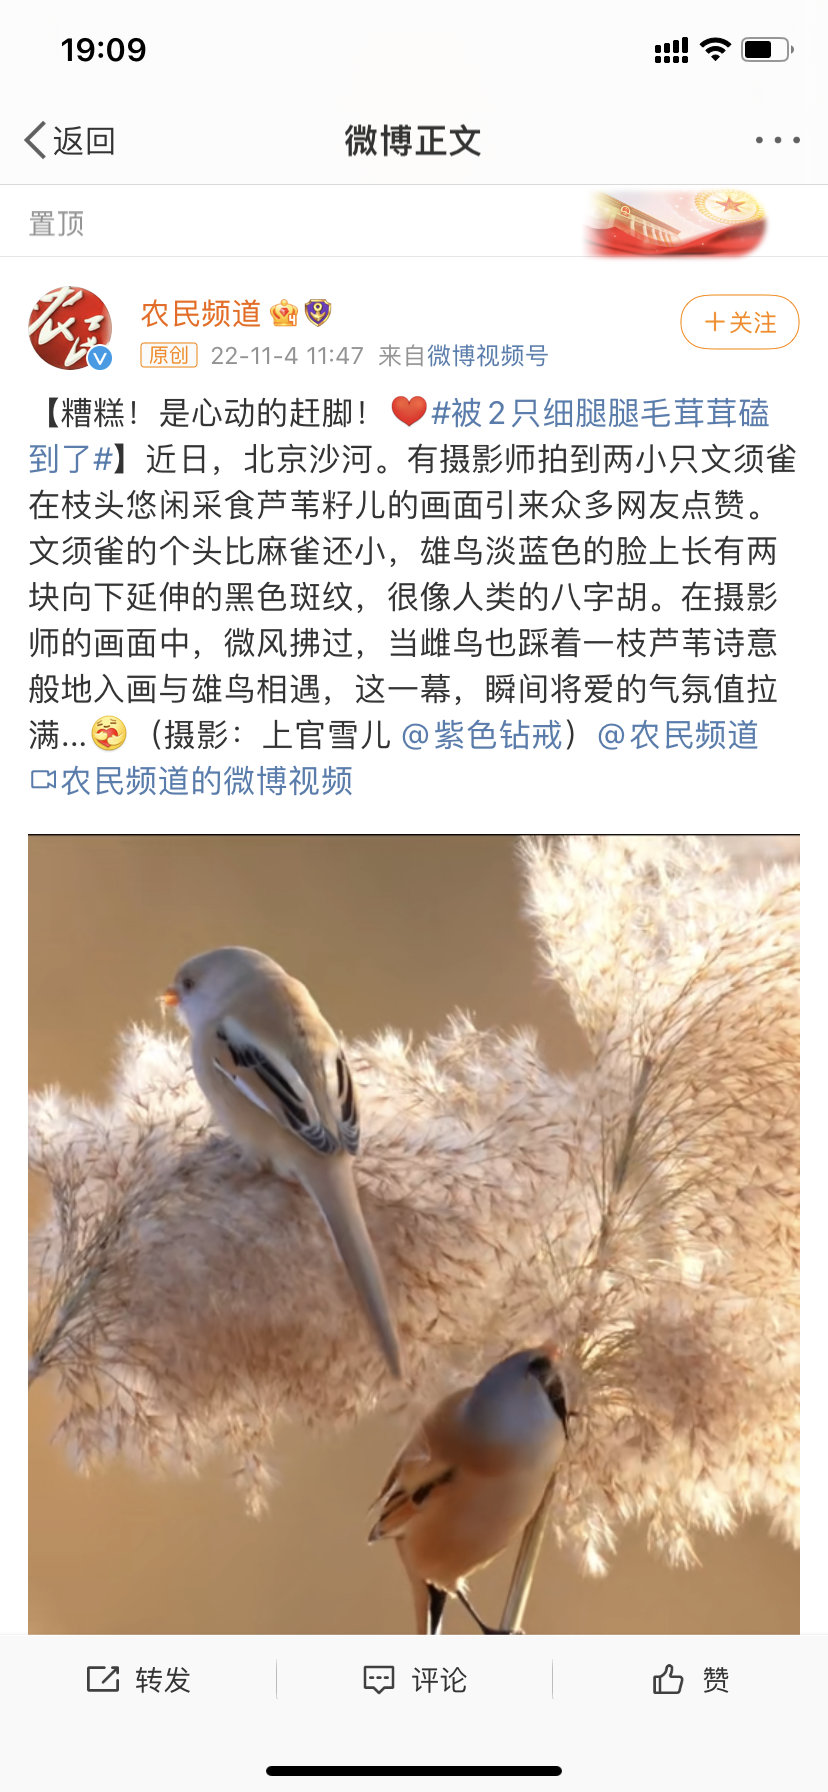 北京有摄影师拍到两小只文须雀在枝头悠闲采食芦苇籽儿的画面引来……